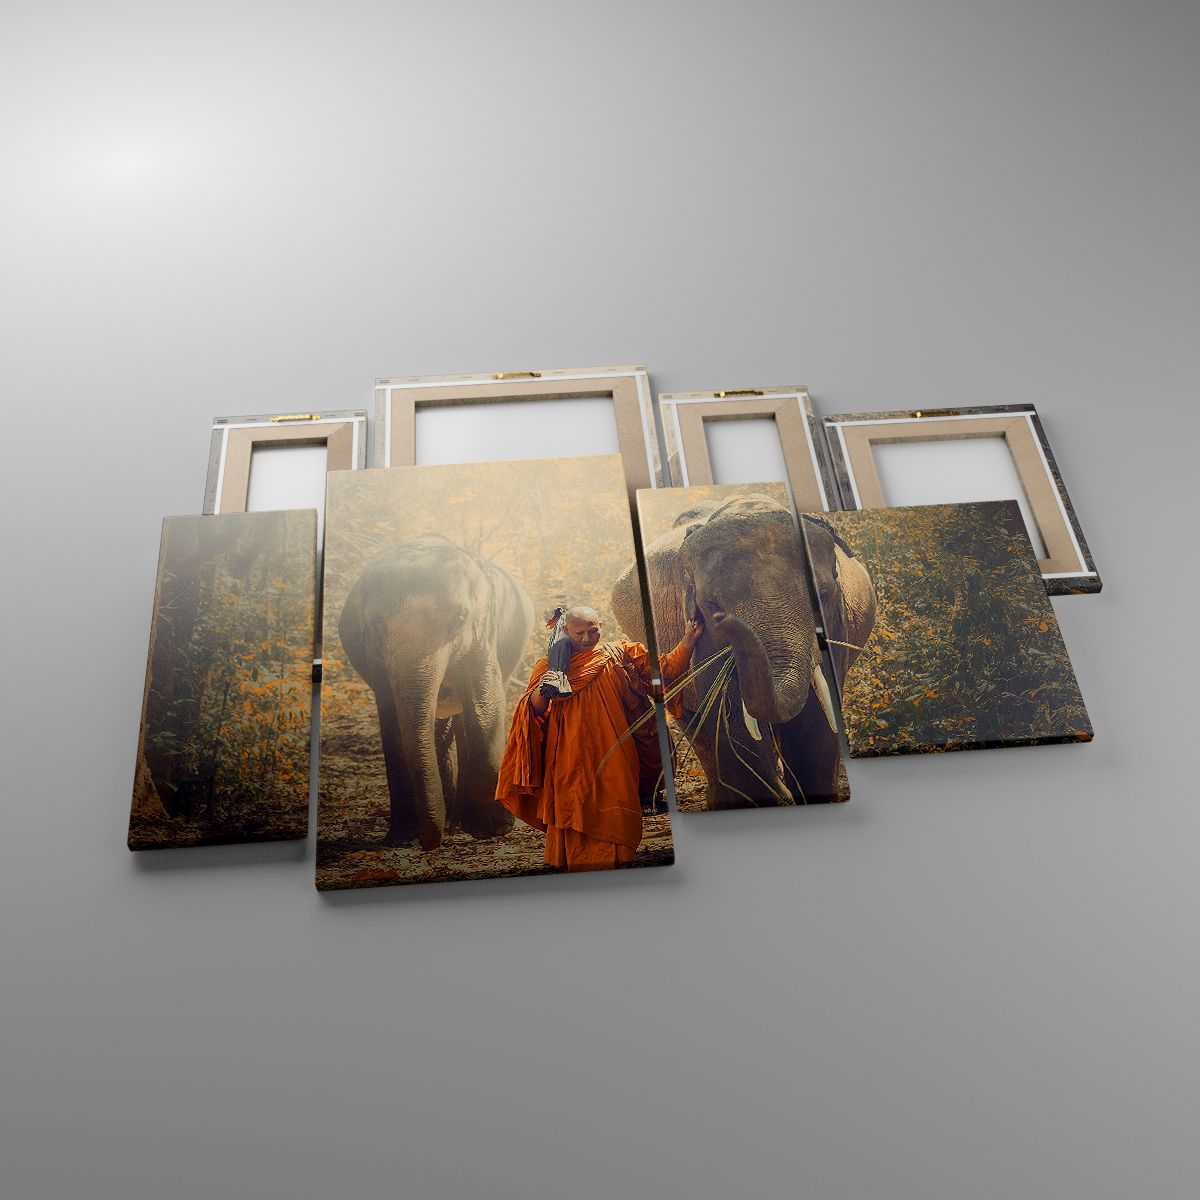 Leinwandbild Asien, Leinwandbild Elefant, Leinwandbild Mönch, Leinwandbild Urwald, Leinwandbild Buddhismus